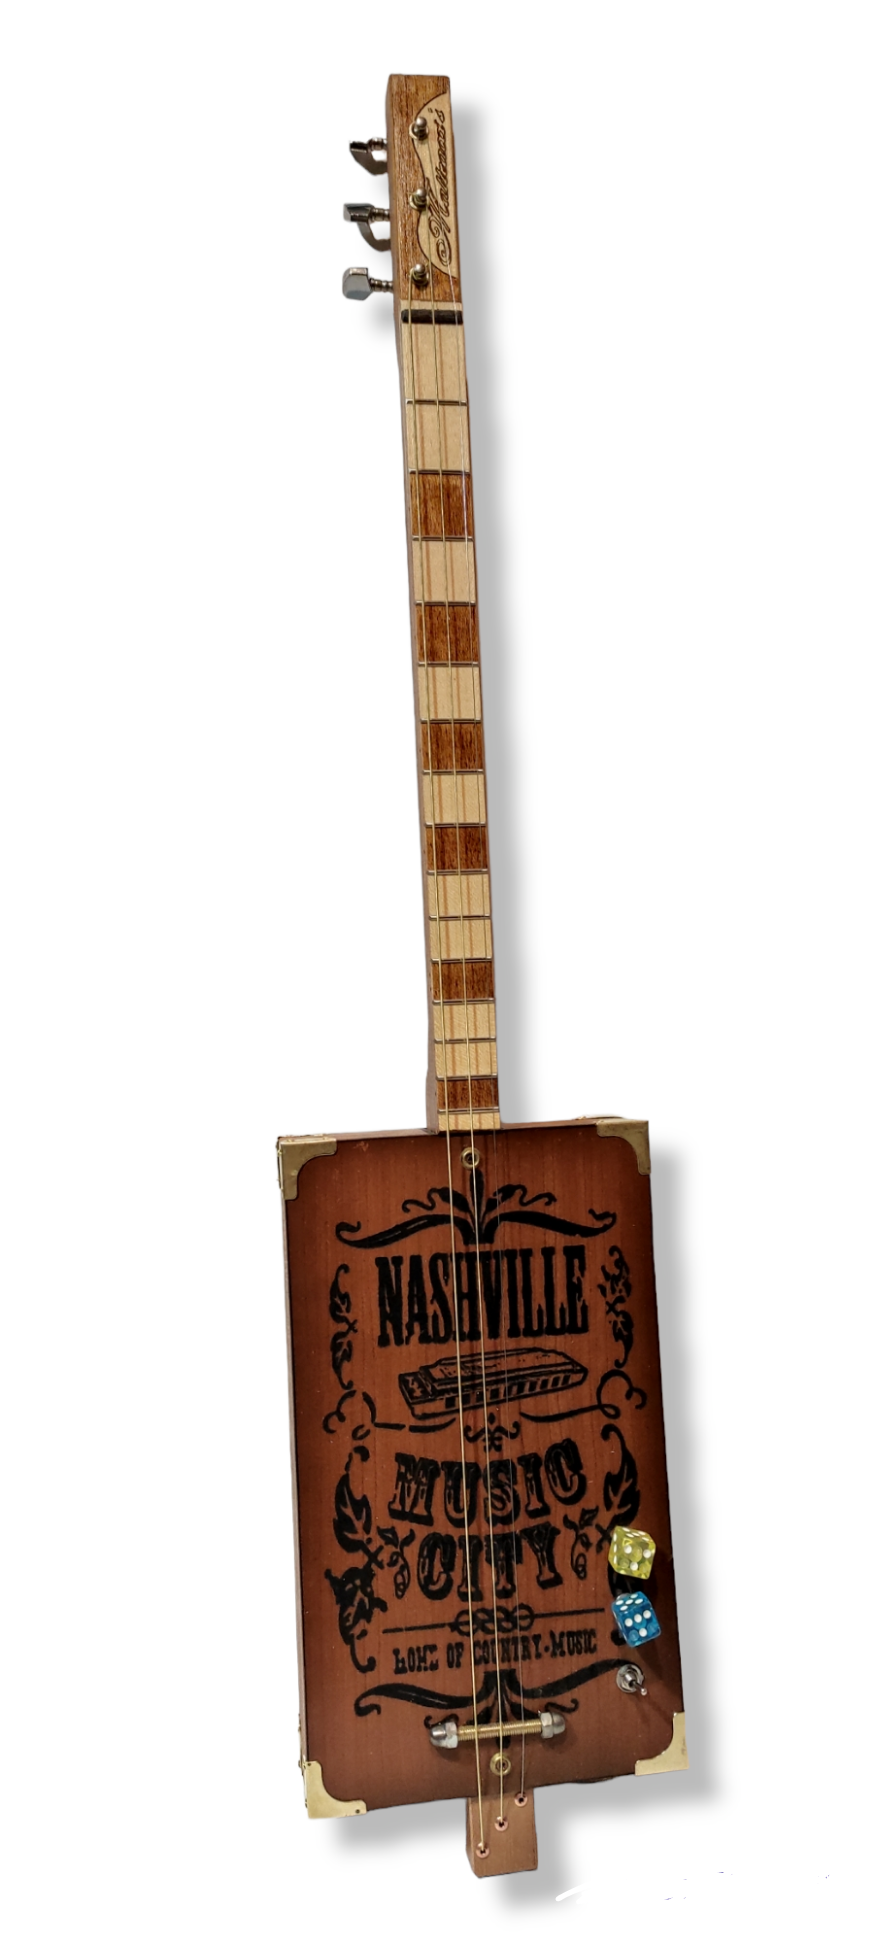 Nashville Prisco 3tpv Special  cigar box guitar